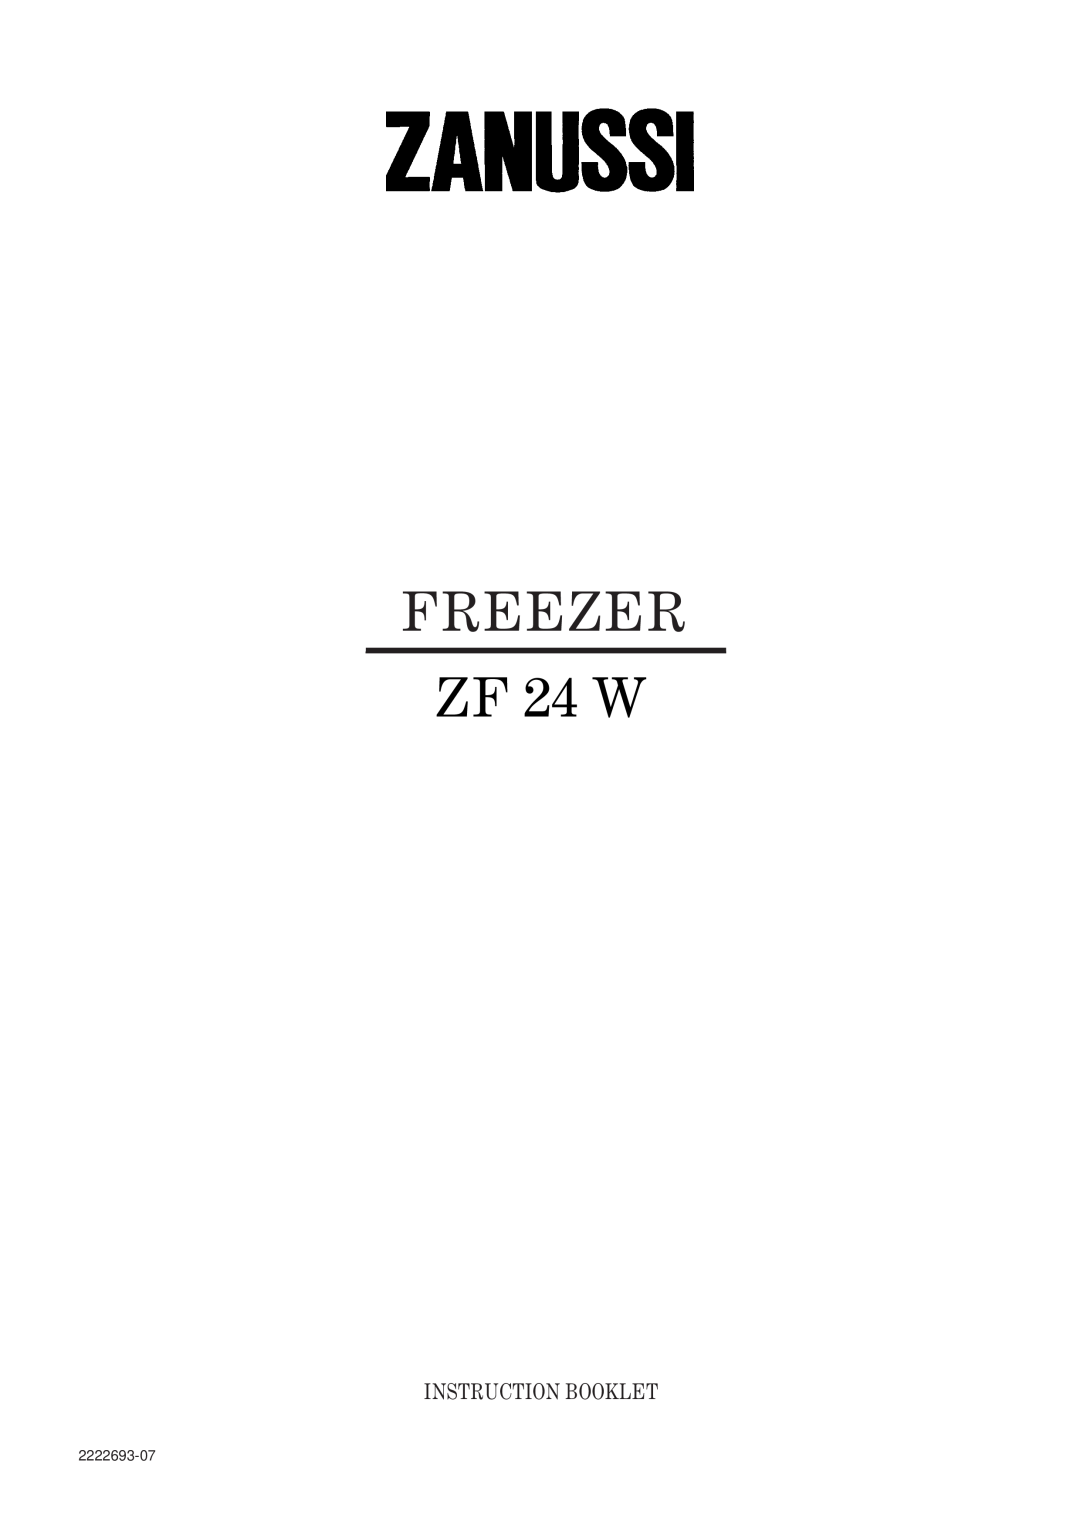 Zanussi manual FREEZER ZF 24 W, Instruction Booklet, 2222693-07 